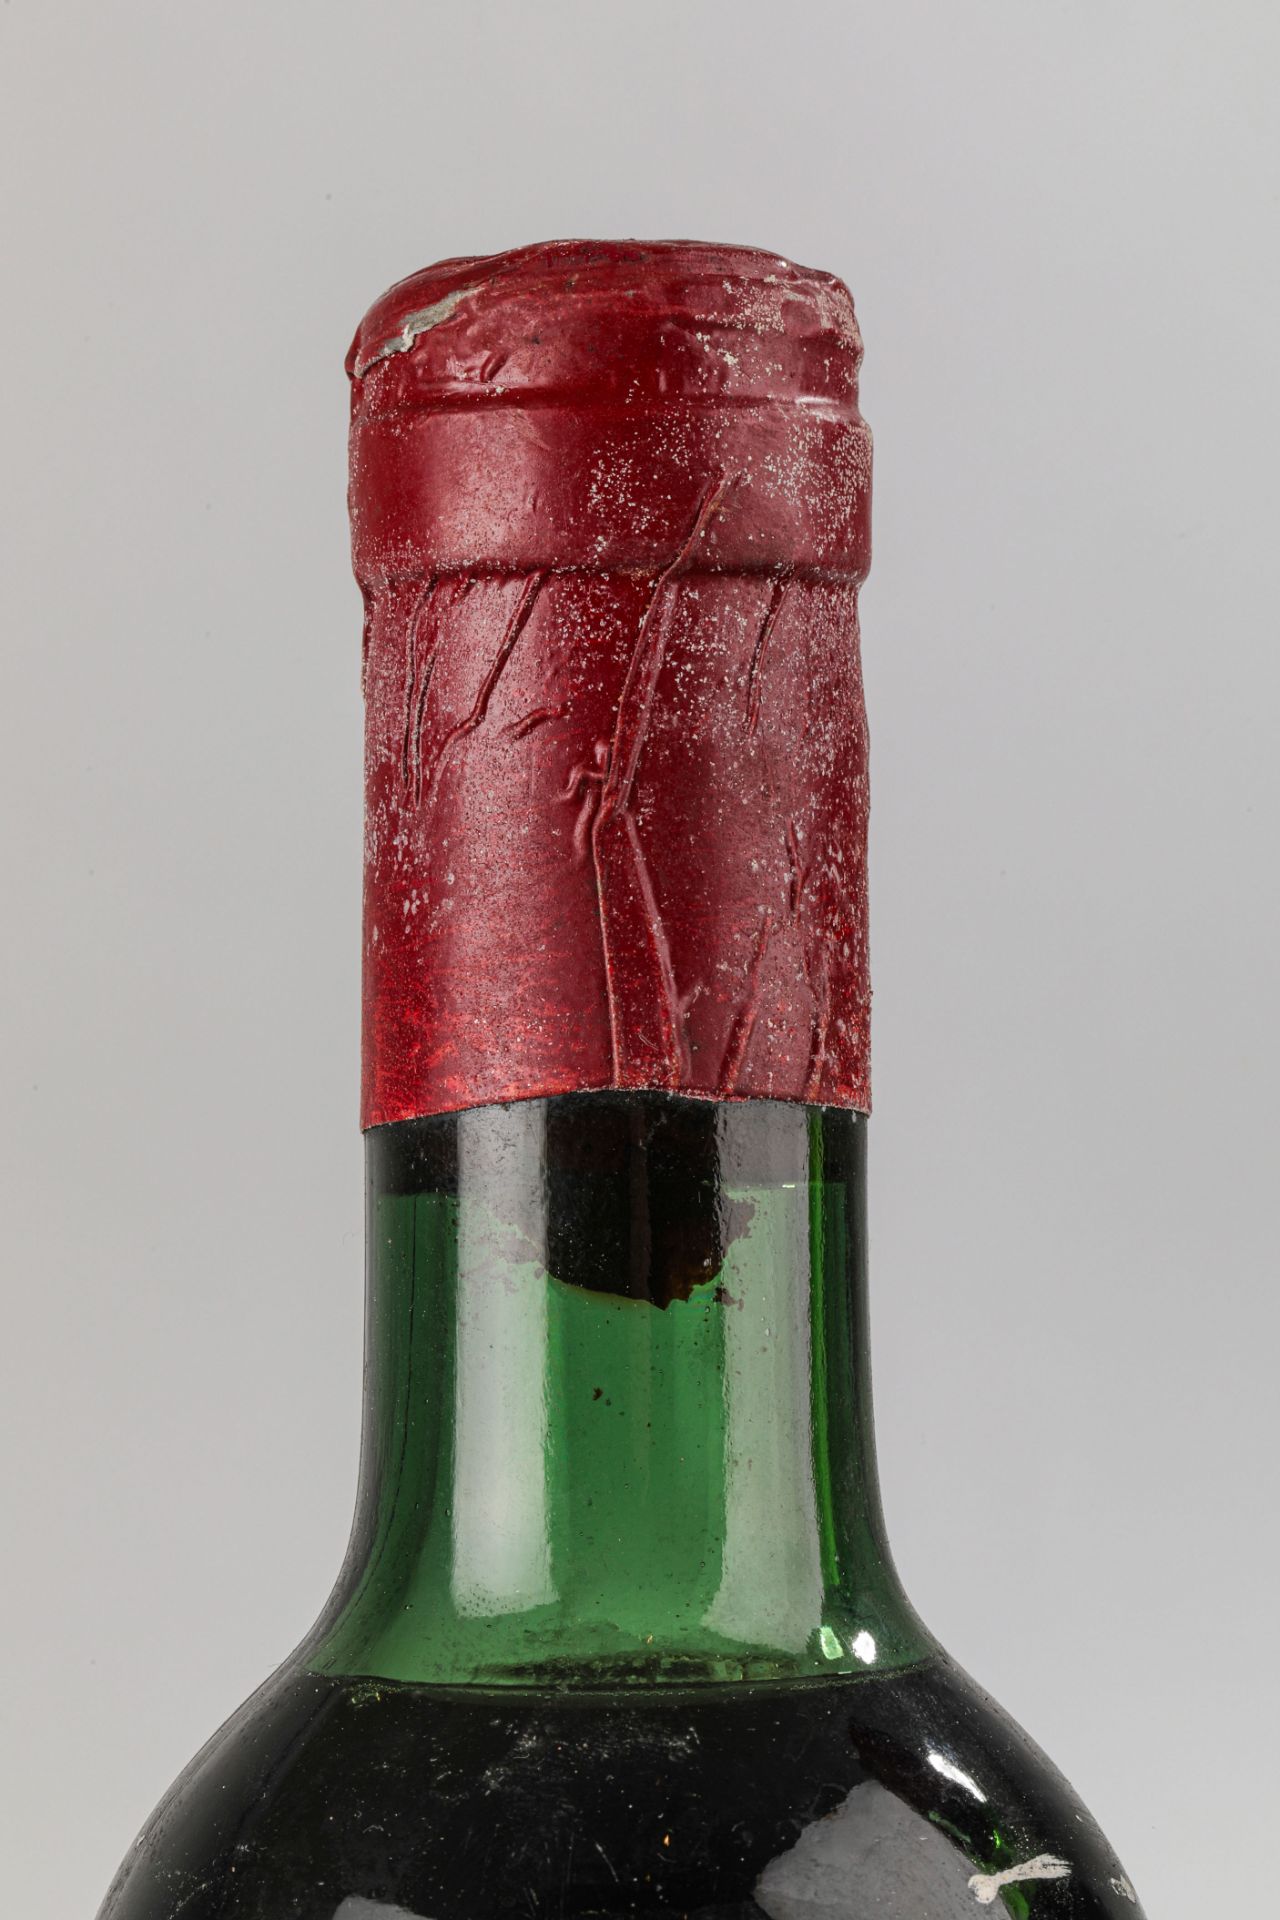 VEGA SICILIA UNICO. 1964. 2 Bouteilles N° 09928 et N°46411 sur production de 96 000 bouteilles. - Image 6 of 9